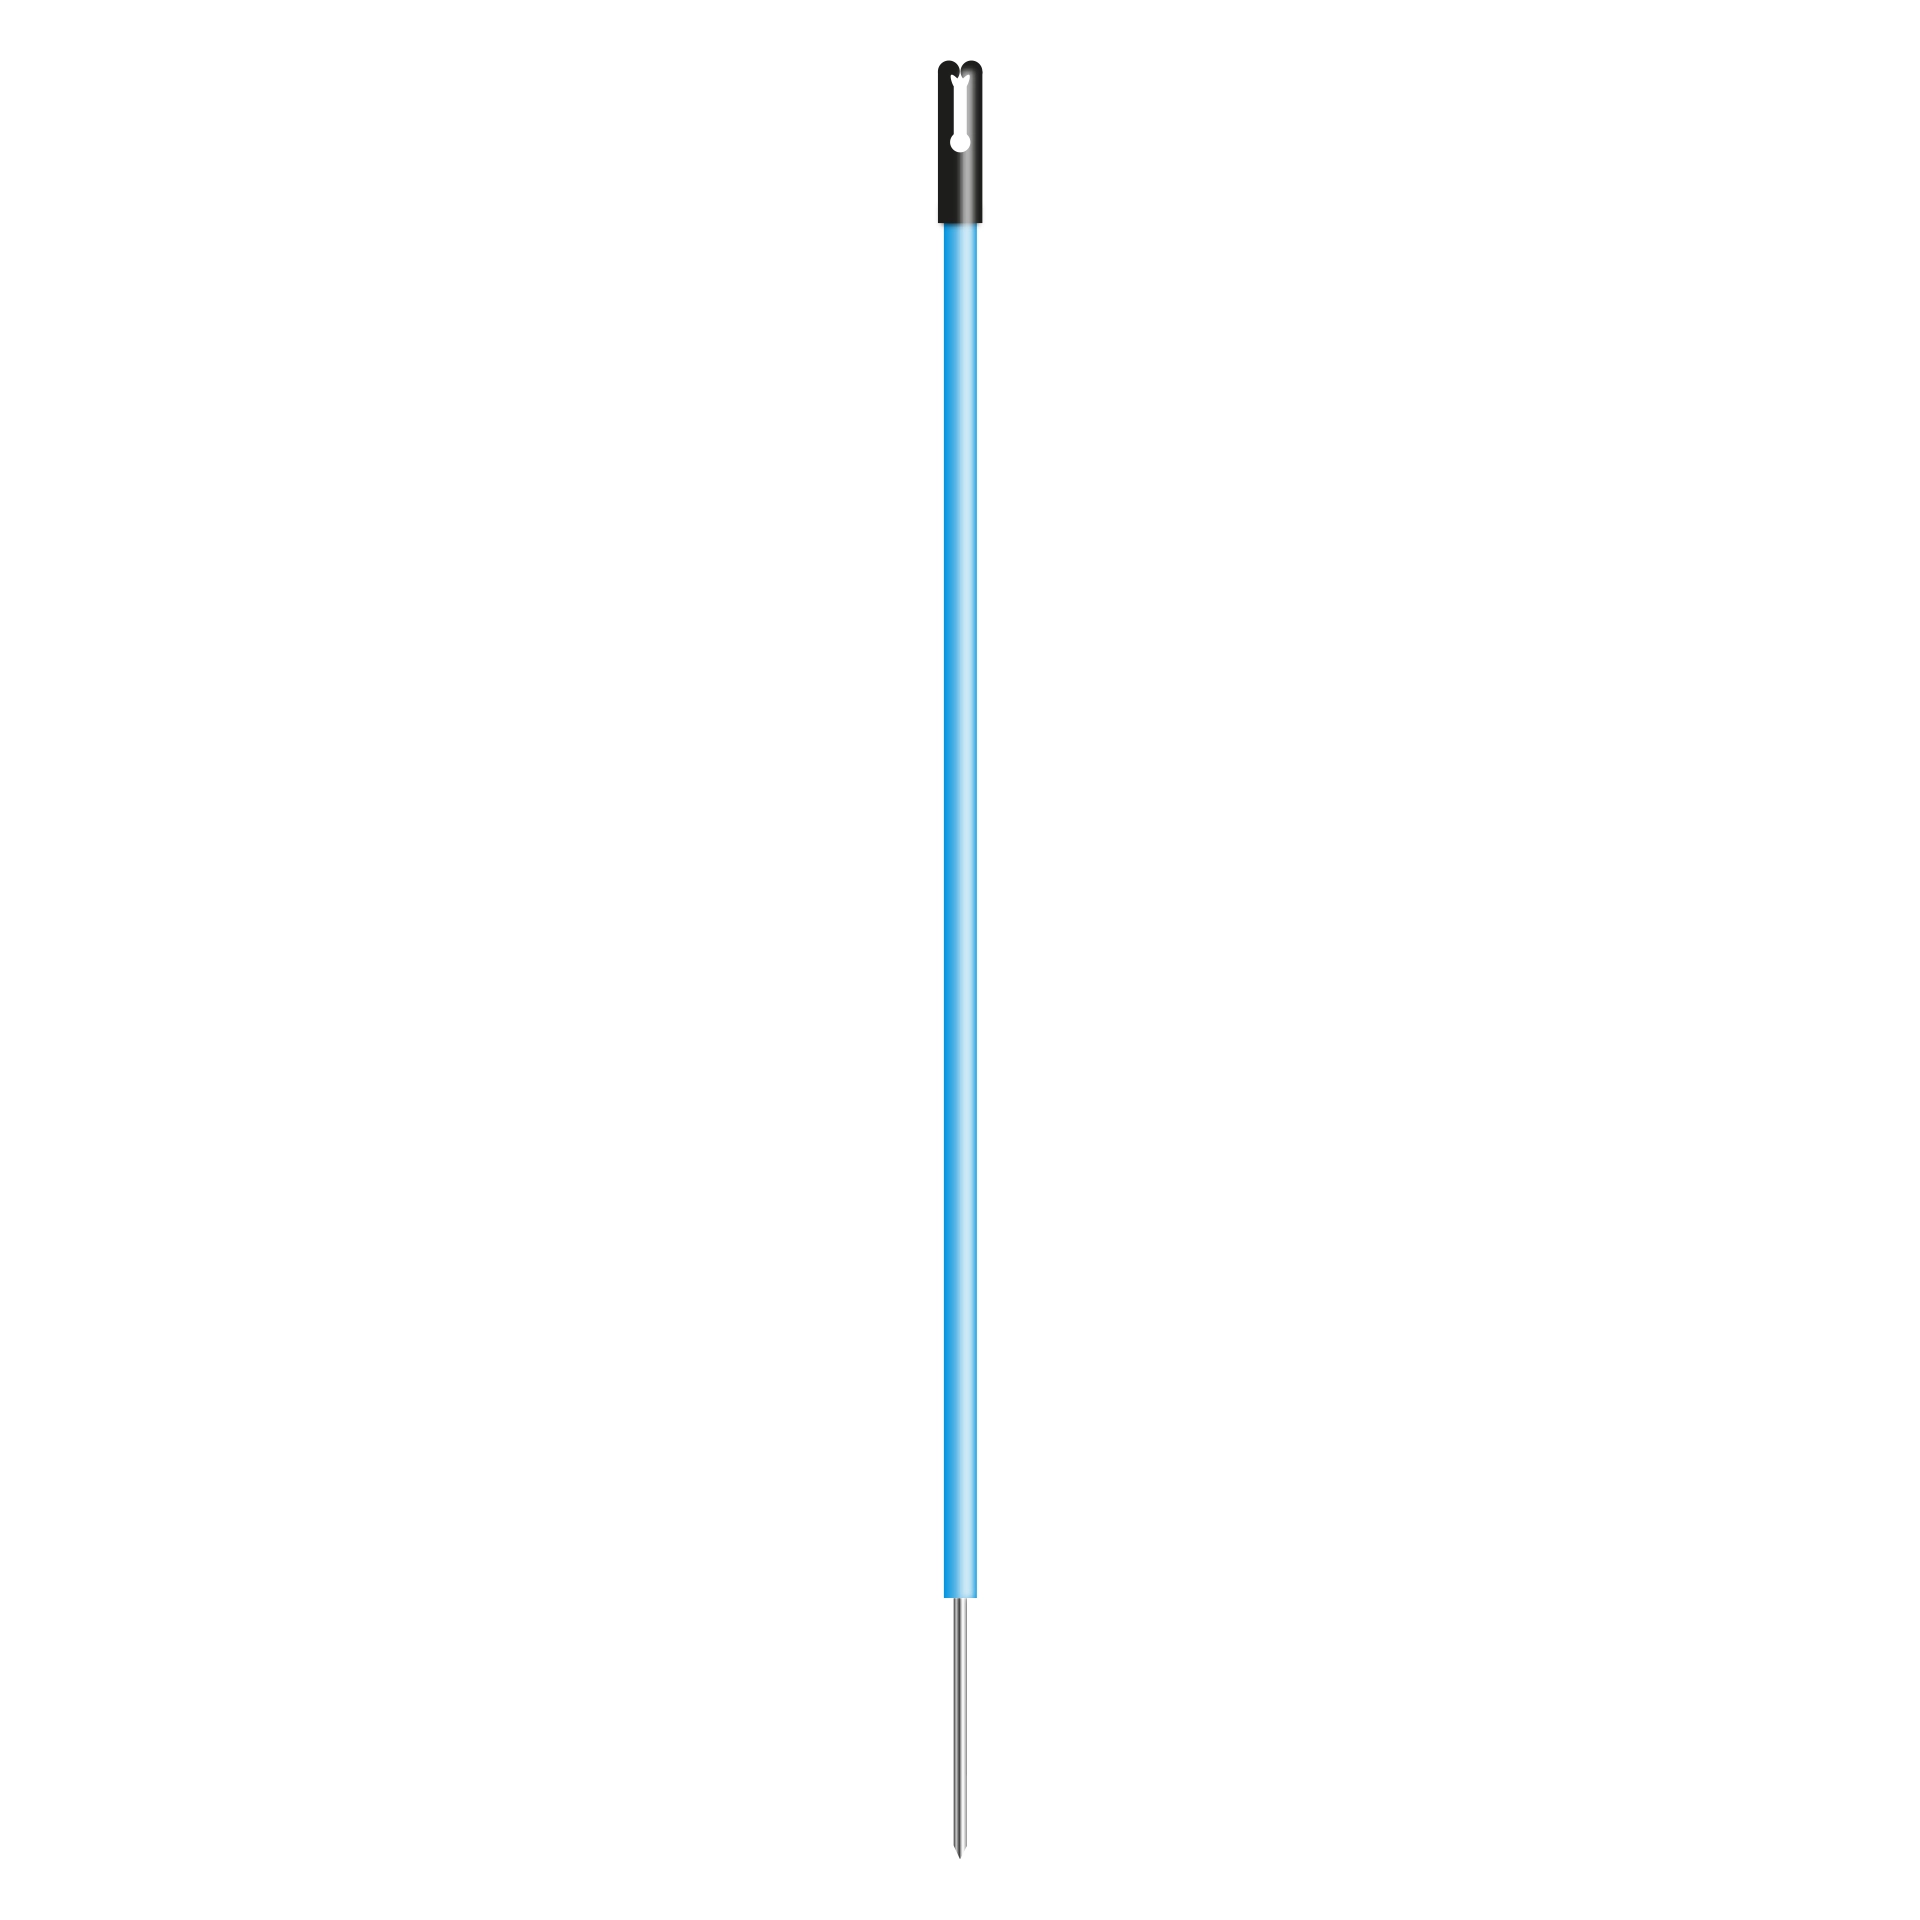 Kunststof paal blauw, 0,85m + 0,20m pen (10 stuks)